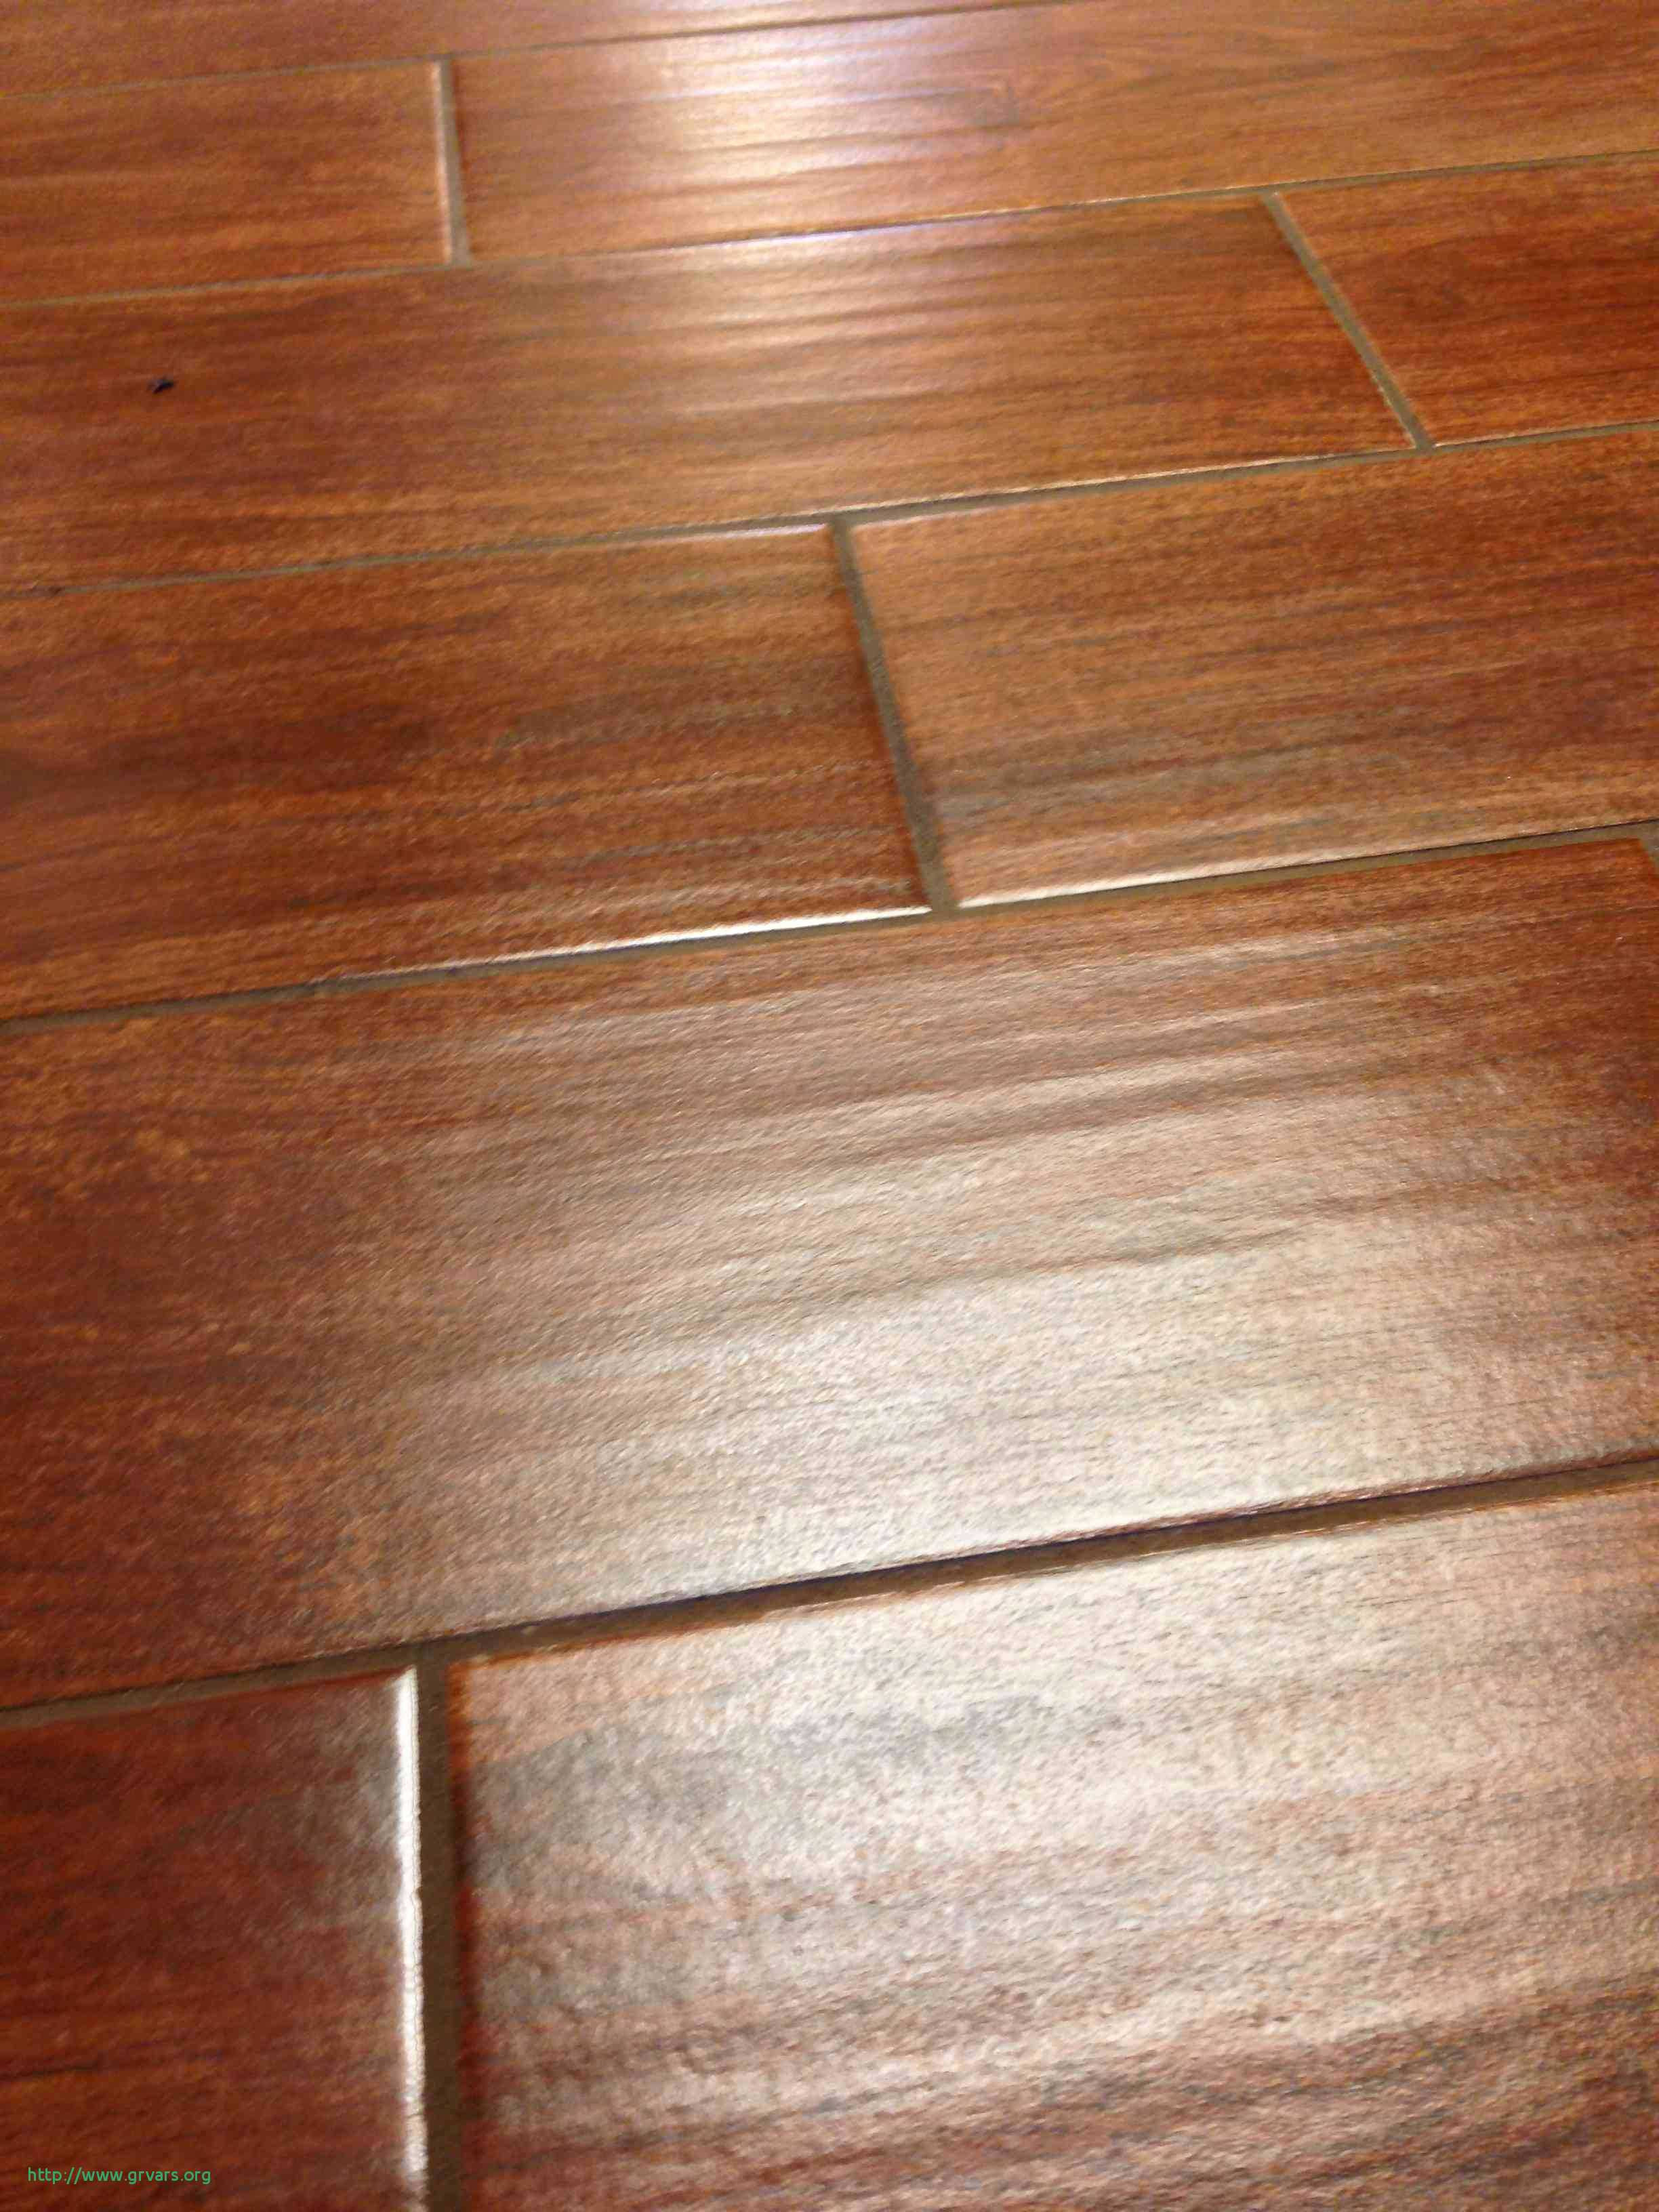 Hardwood Flooring Sale In Mississauga Of 22 Luxe Hardwood Floor Refinishing Winston Salem Nc Ideas Blog In Harwood Flooring Best Tile that Looks Like Hardwood Floors Elegant I Pinimg 736x 0d 7b